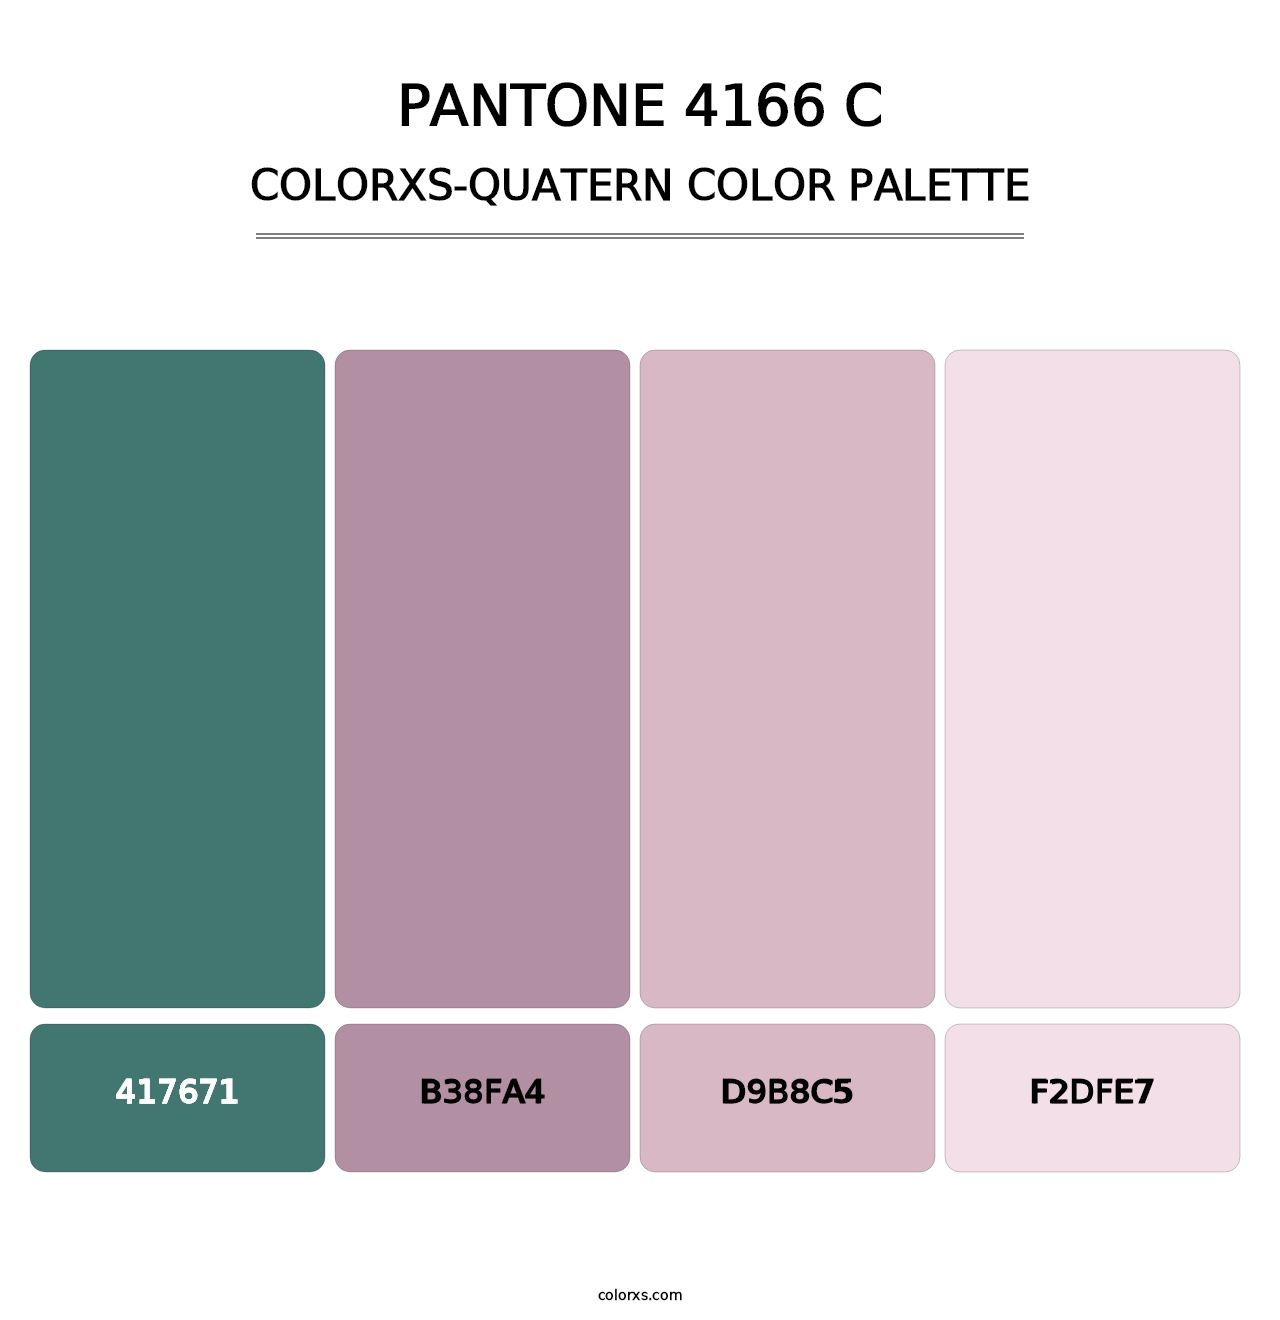 PANTONE 4166 C - Colorxs Quatern Palette